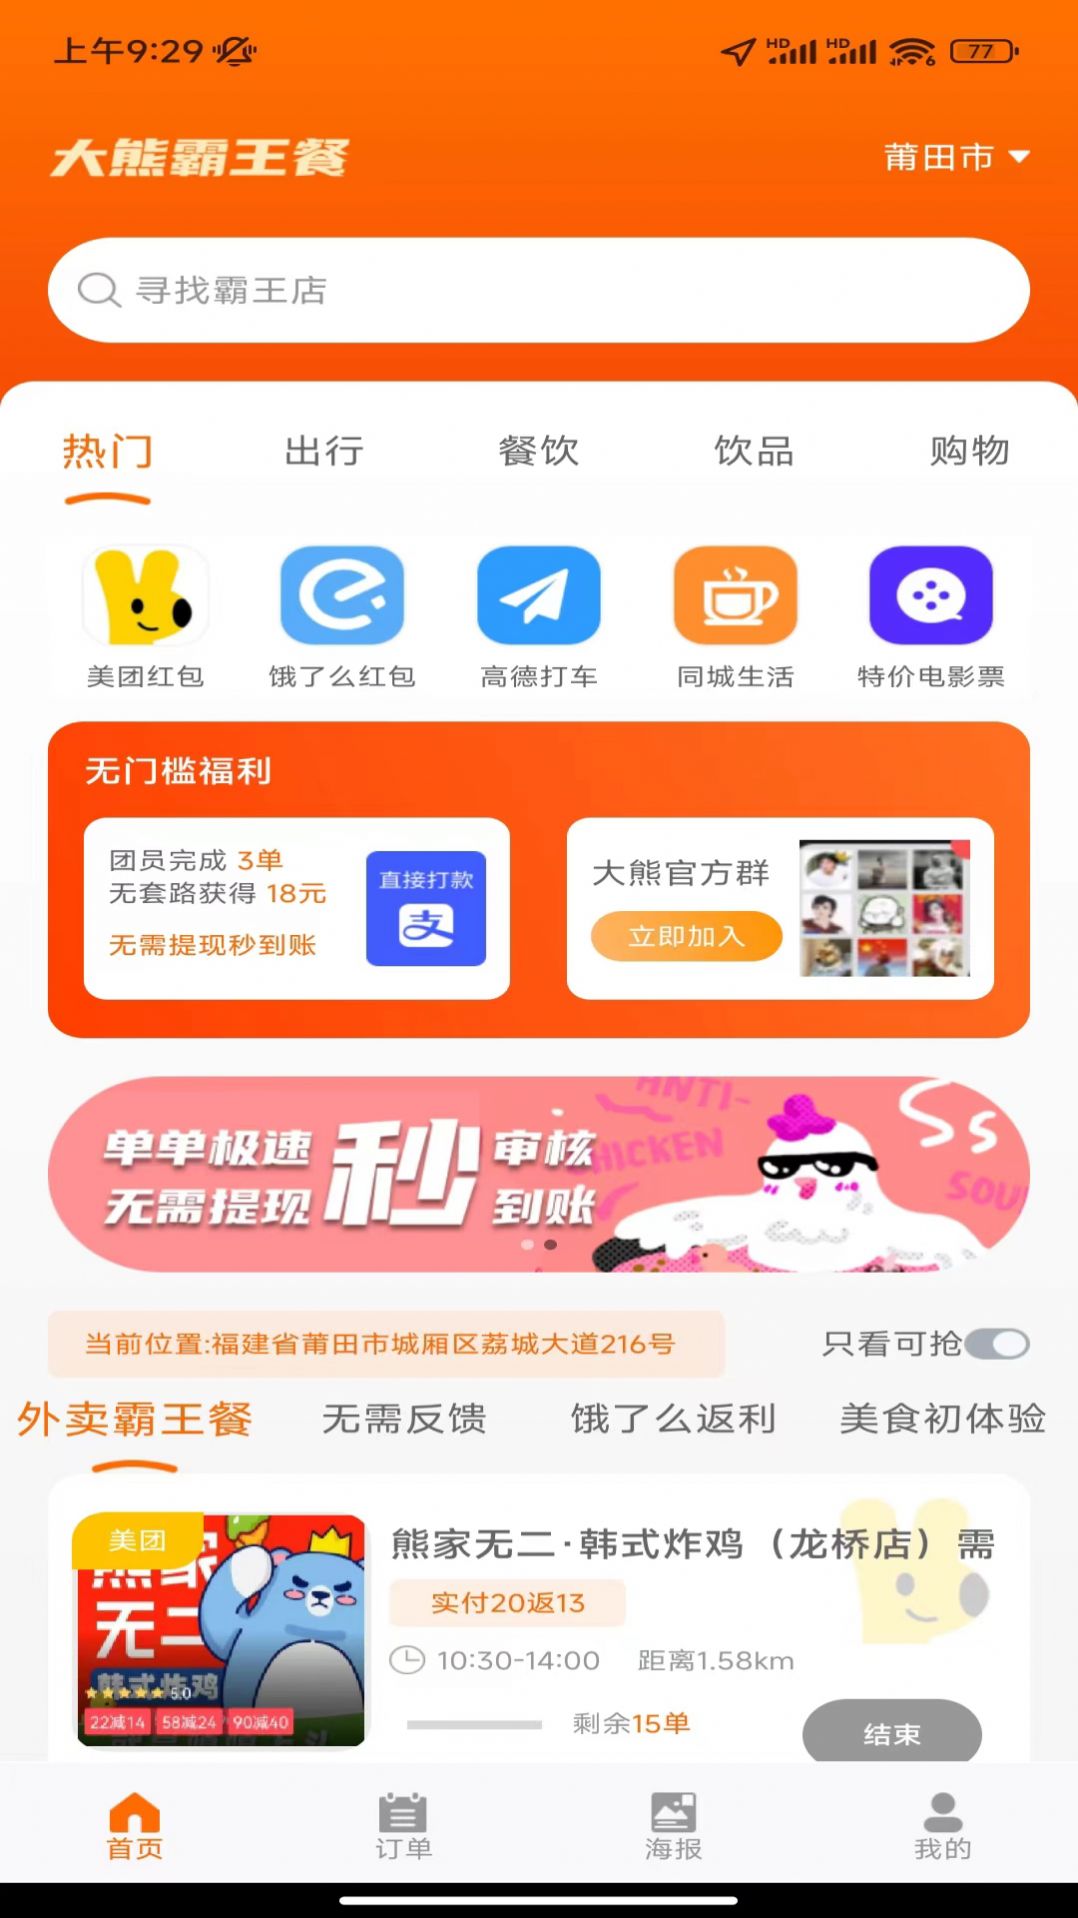 大熊霸王餐app 